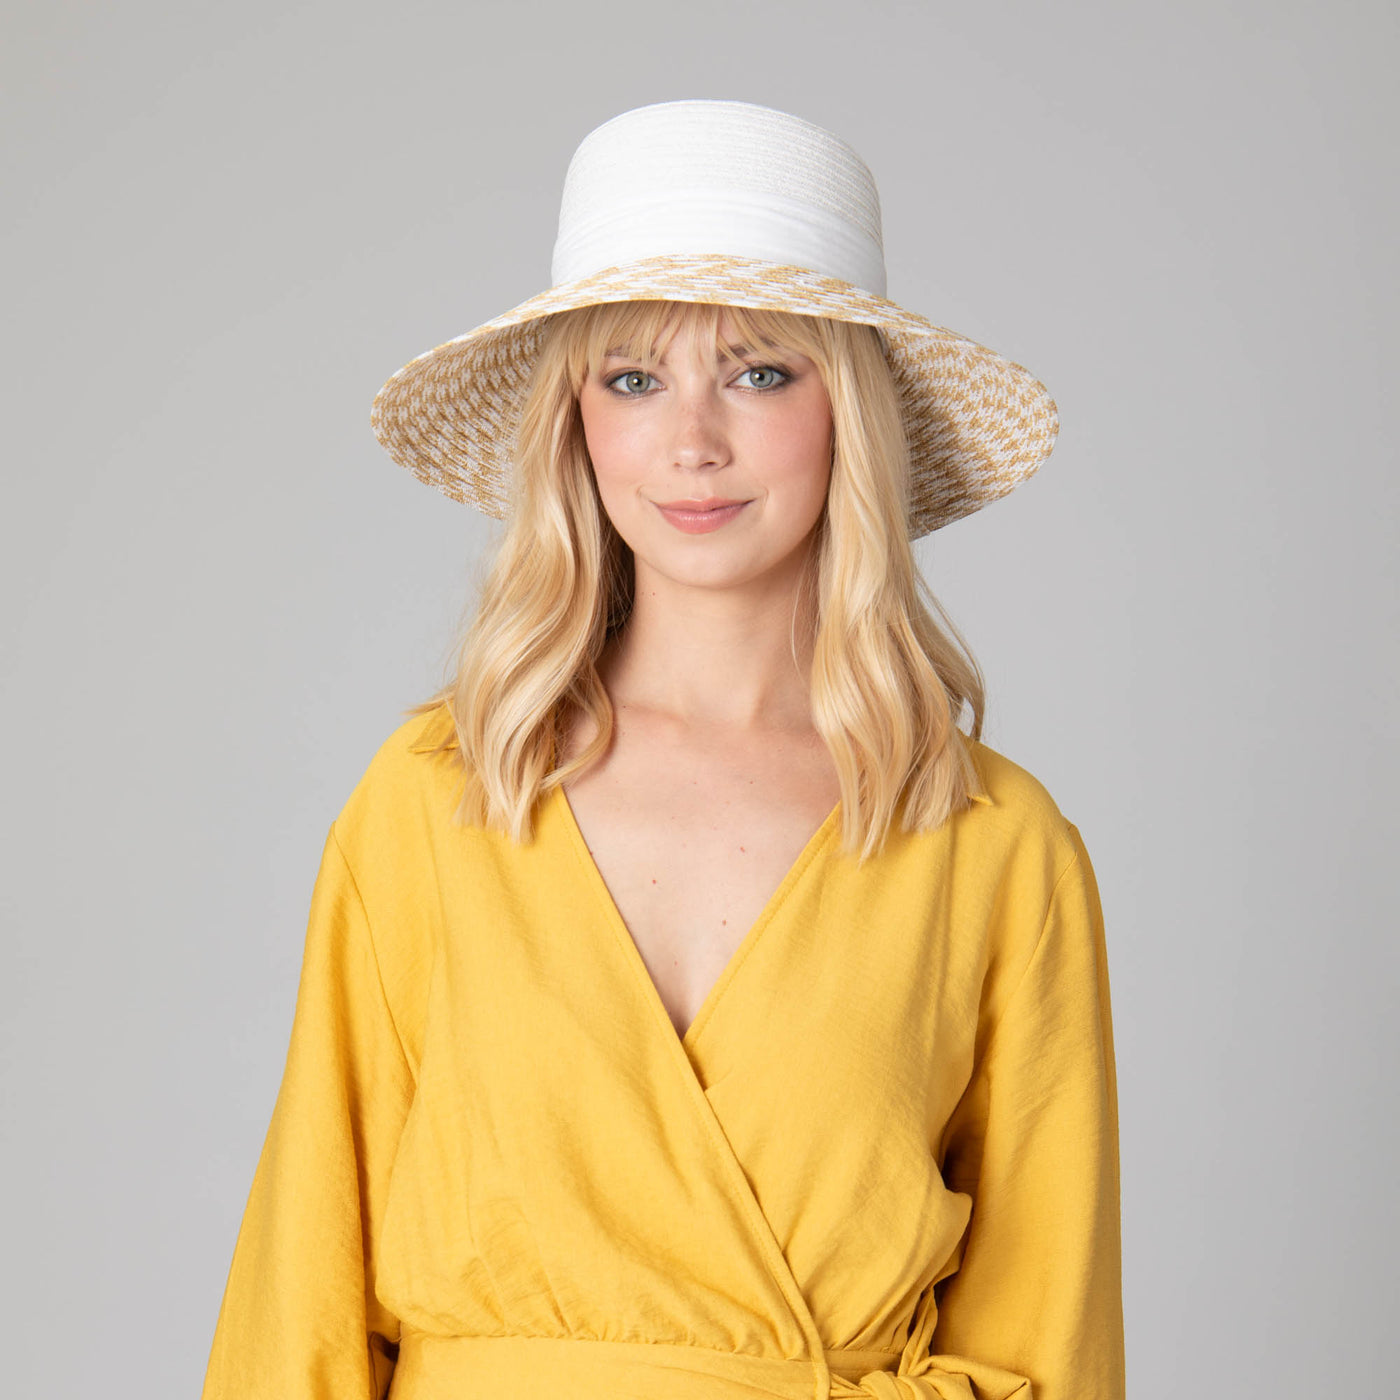 Women's Contrast Round Crown Sun Hat-SUN BRIM-San Diego Hat Company